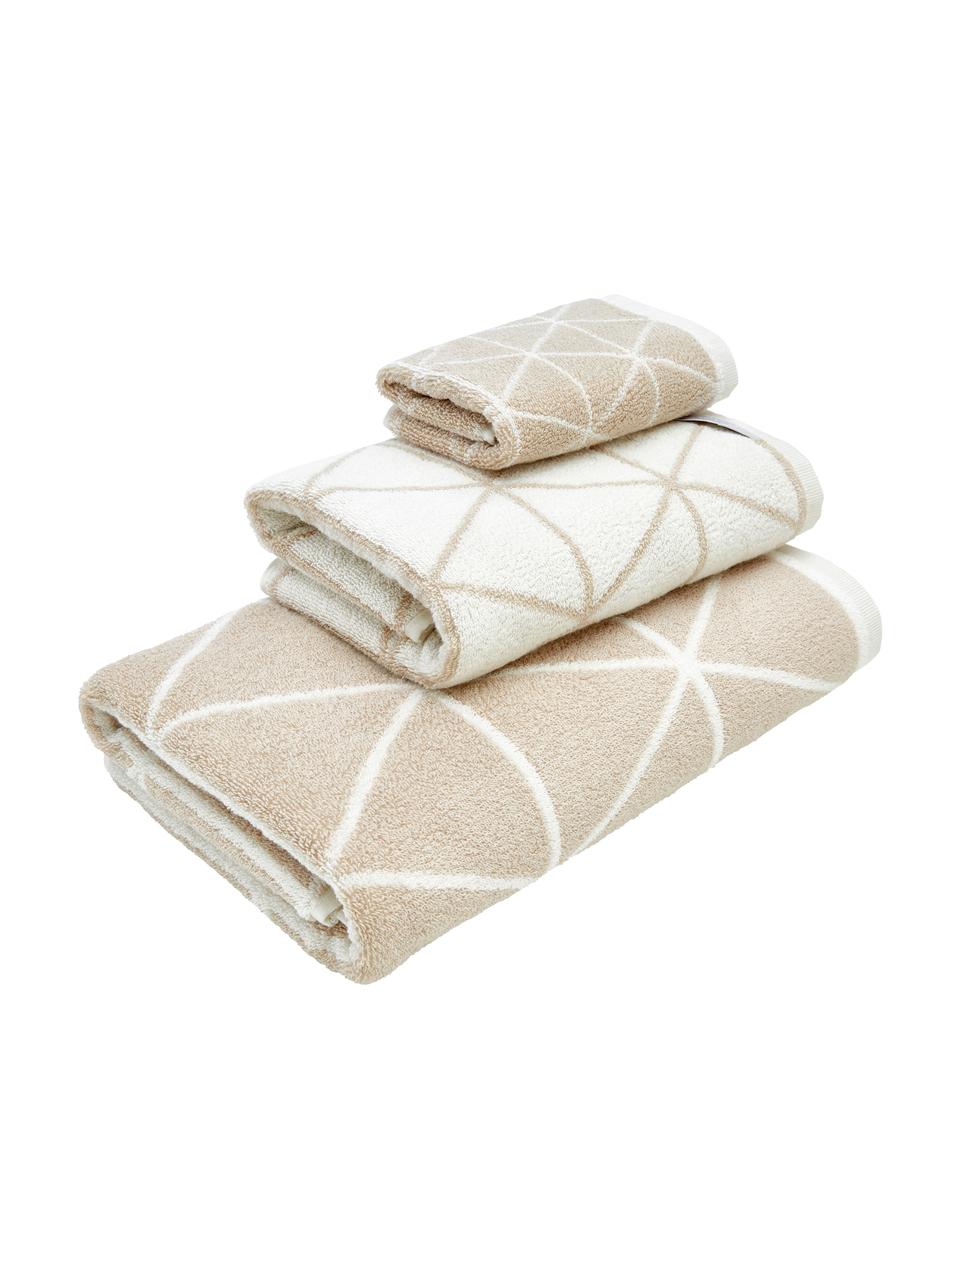 Sada oboustranných ručníků s grafickým vzorem Elina, 3 díly, Béžová, krémově bílá, Sada s různými velikostmi